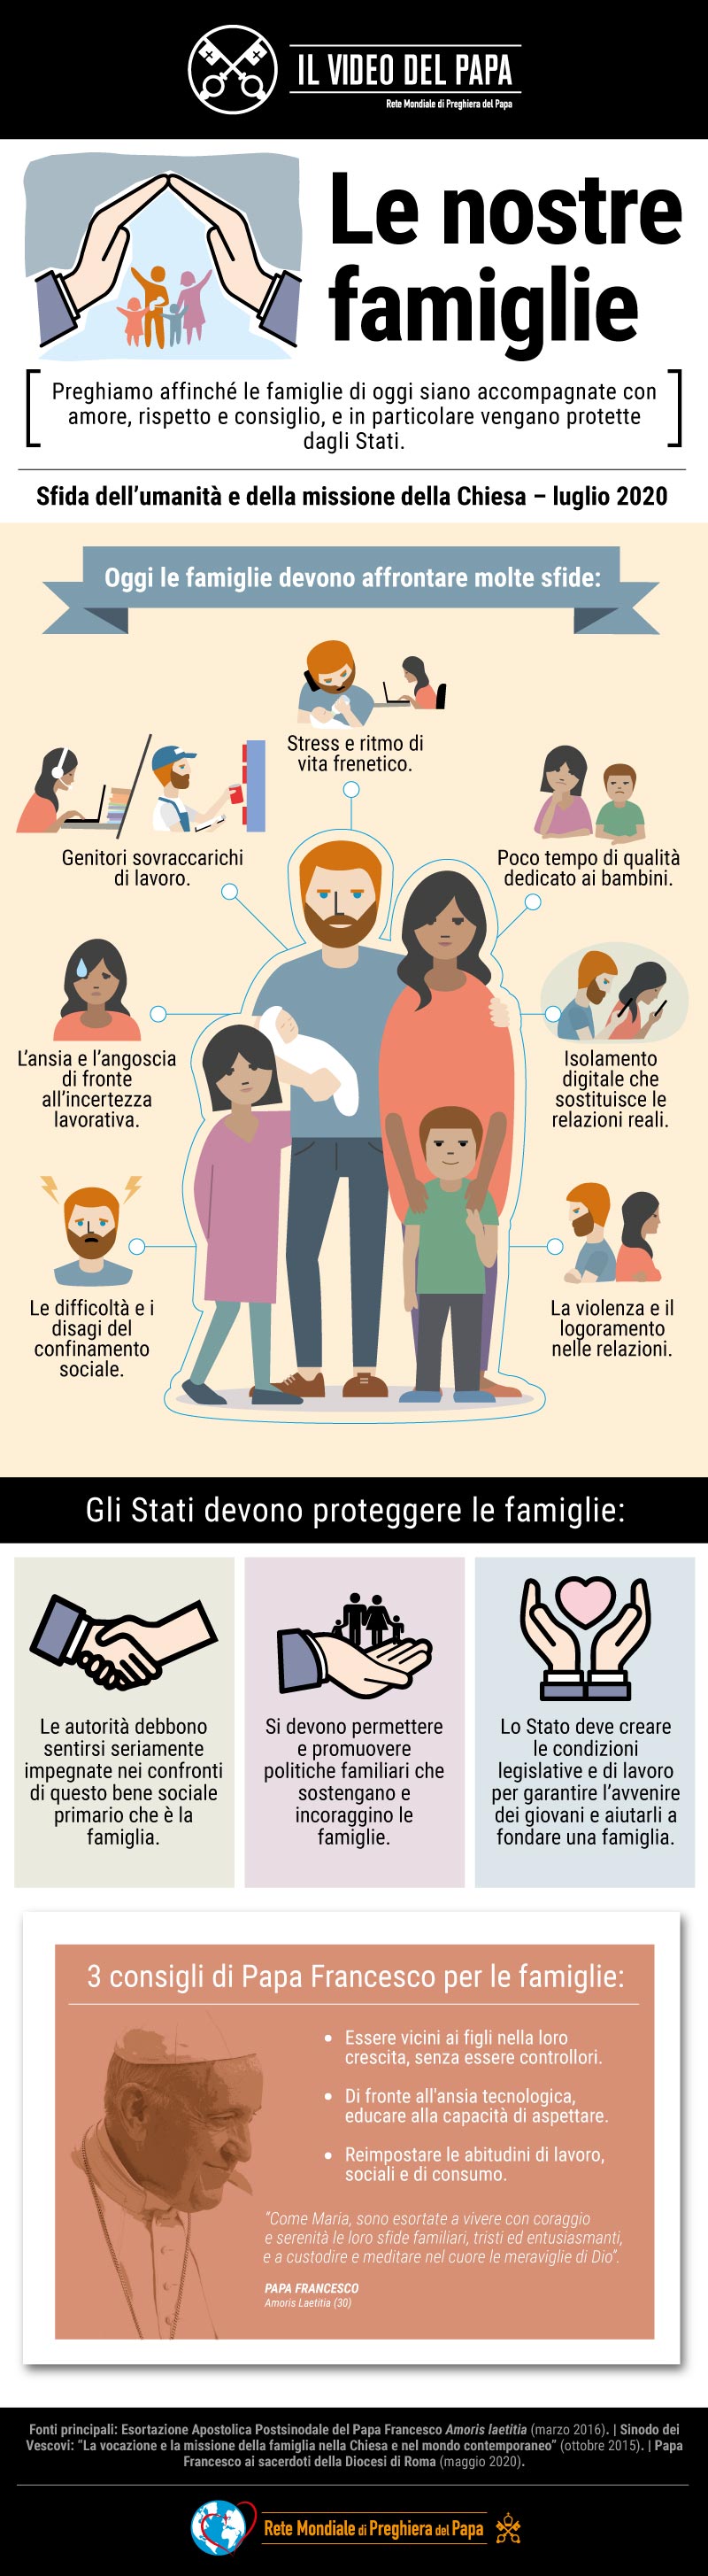 Infografia-TPV-7-2020-IT-Il-Video-del-Papa-Le-nostre-famiglie.jpg